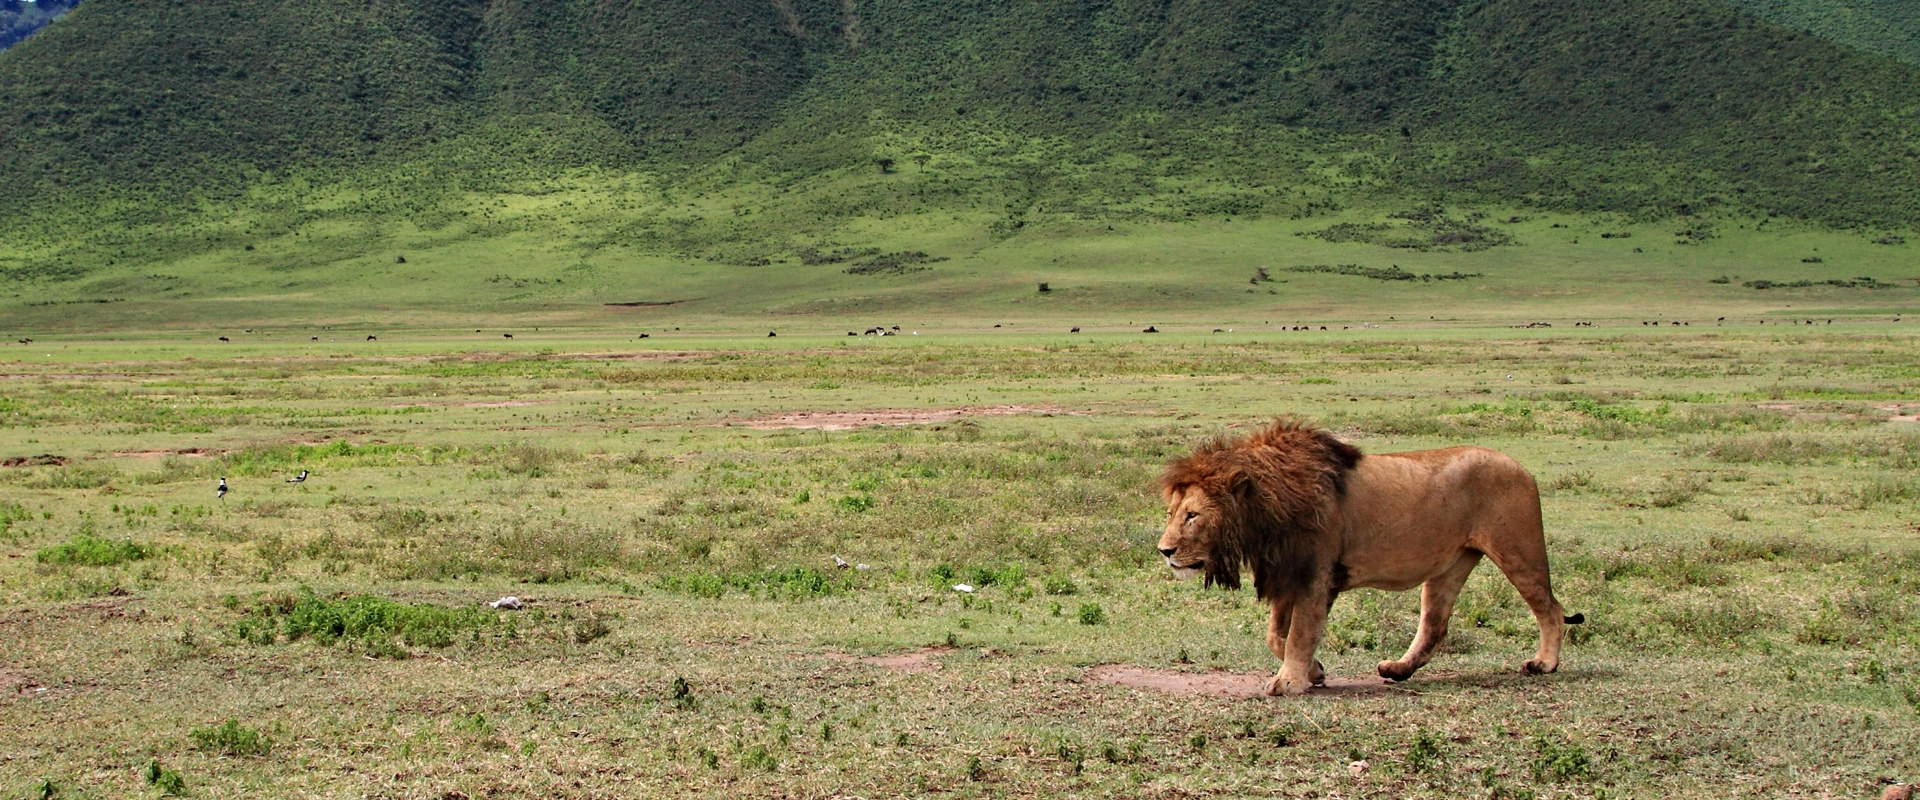 circuit safari tanzanie lion au cratere Ngorongoro